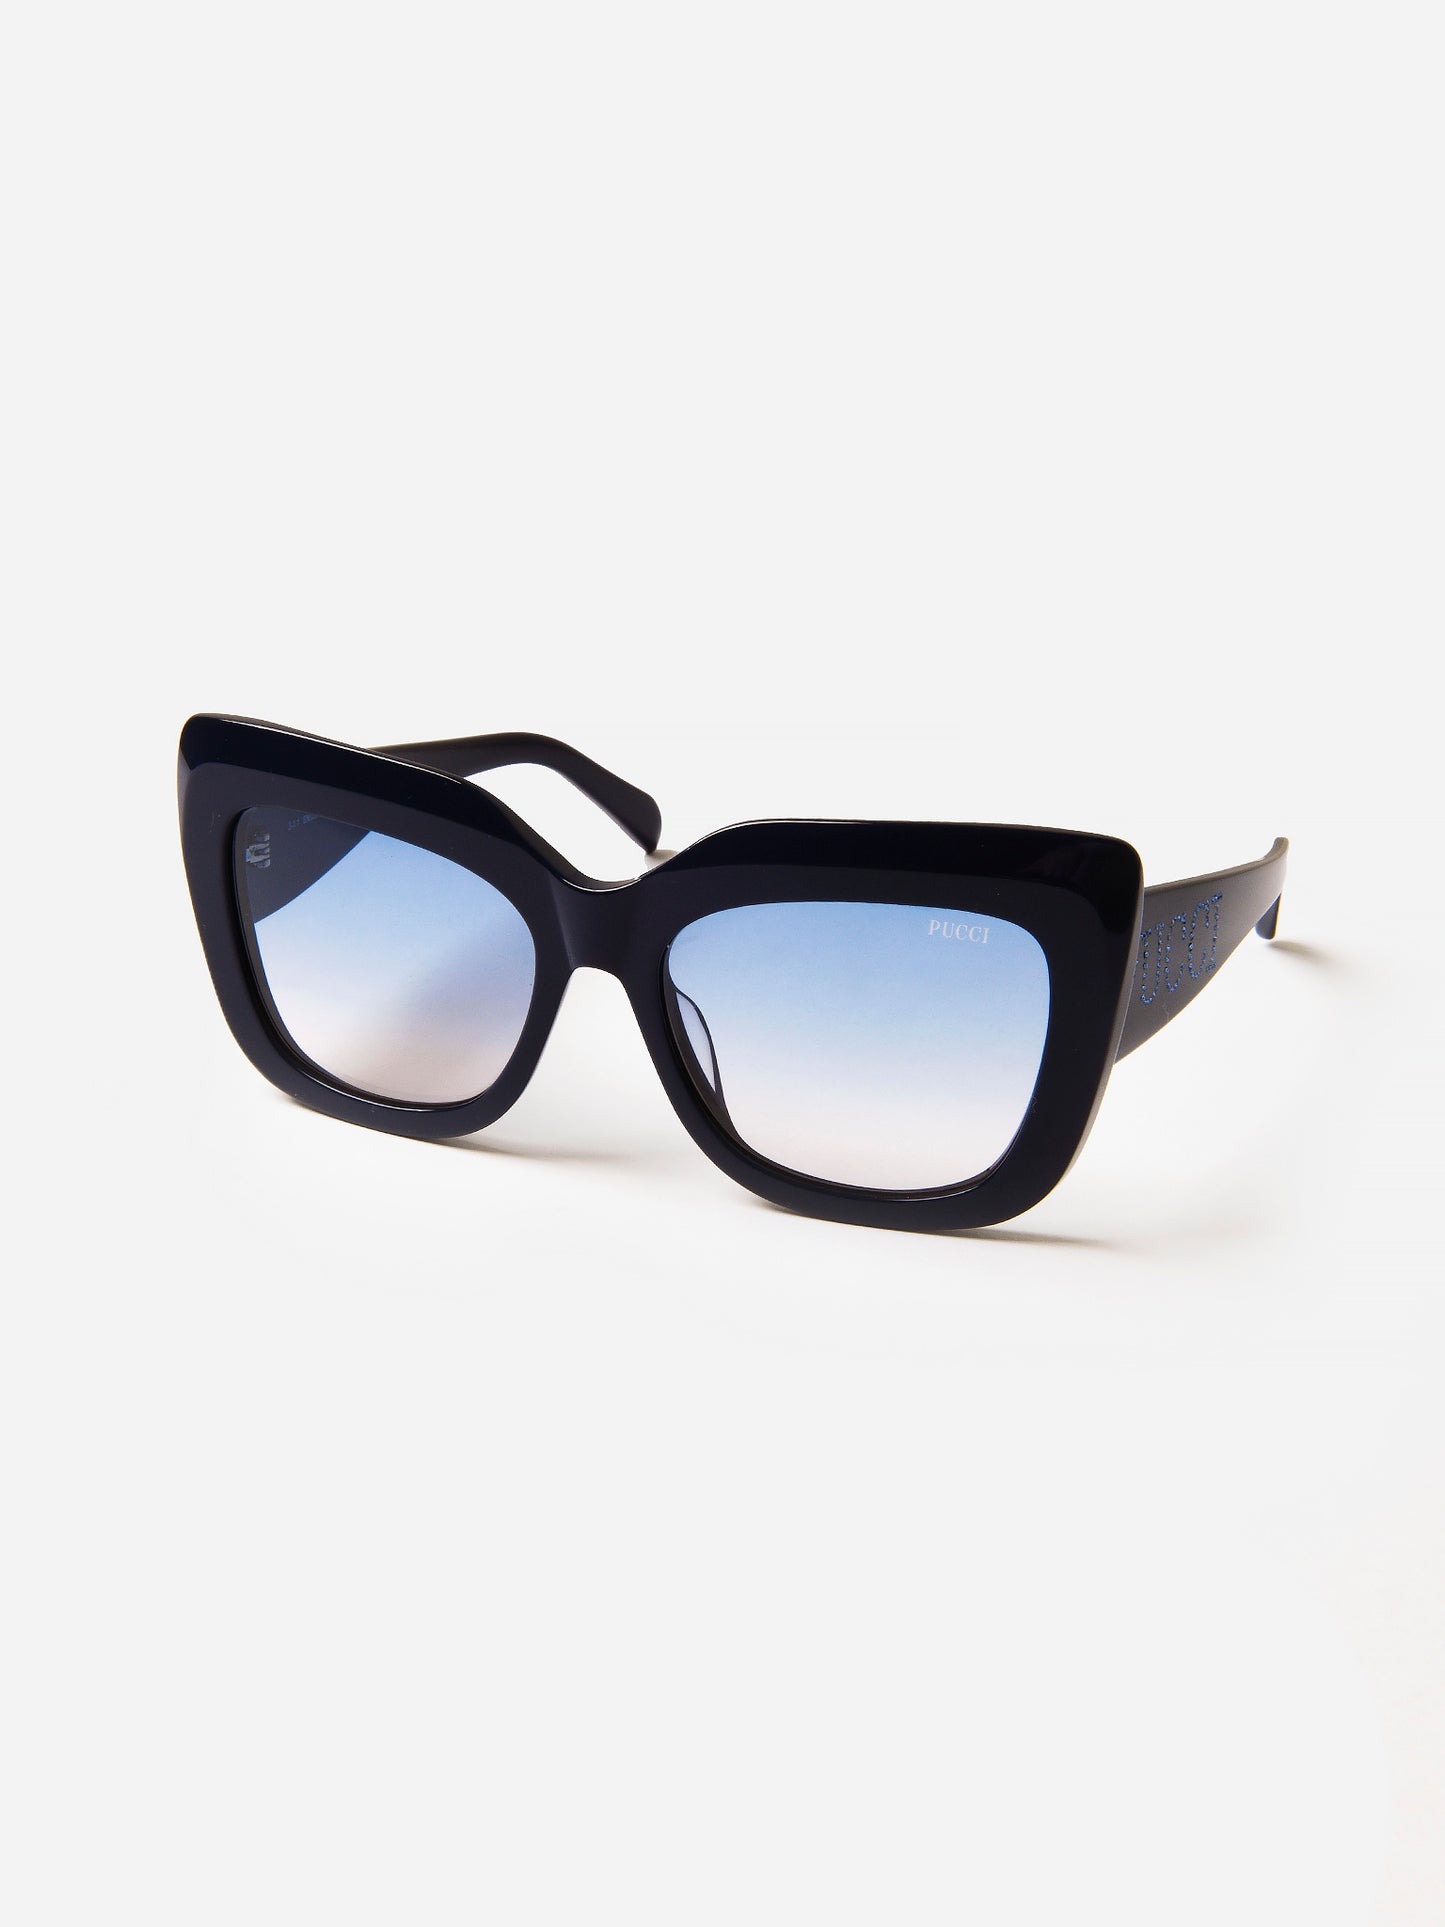 Emilio Pucci EP0163 01A sunglasses for women –